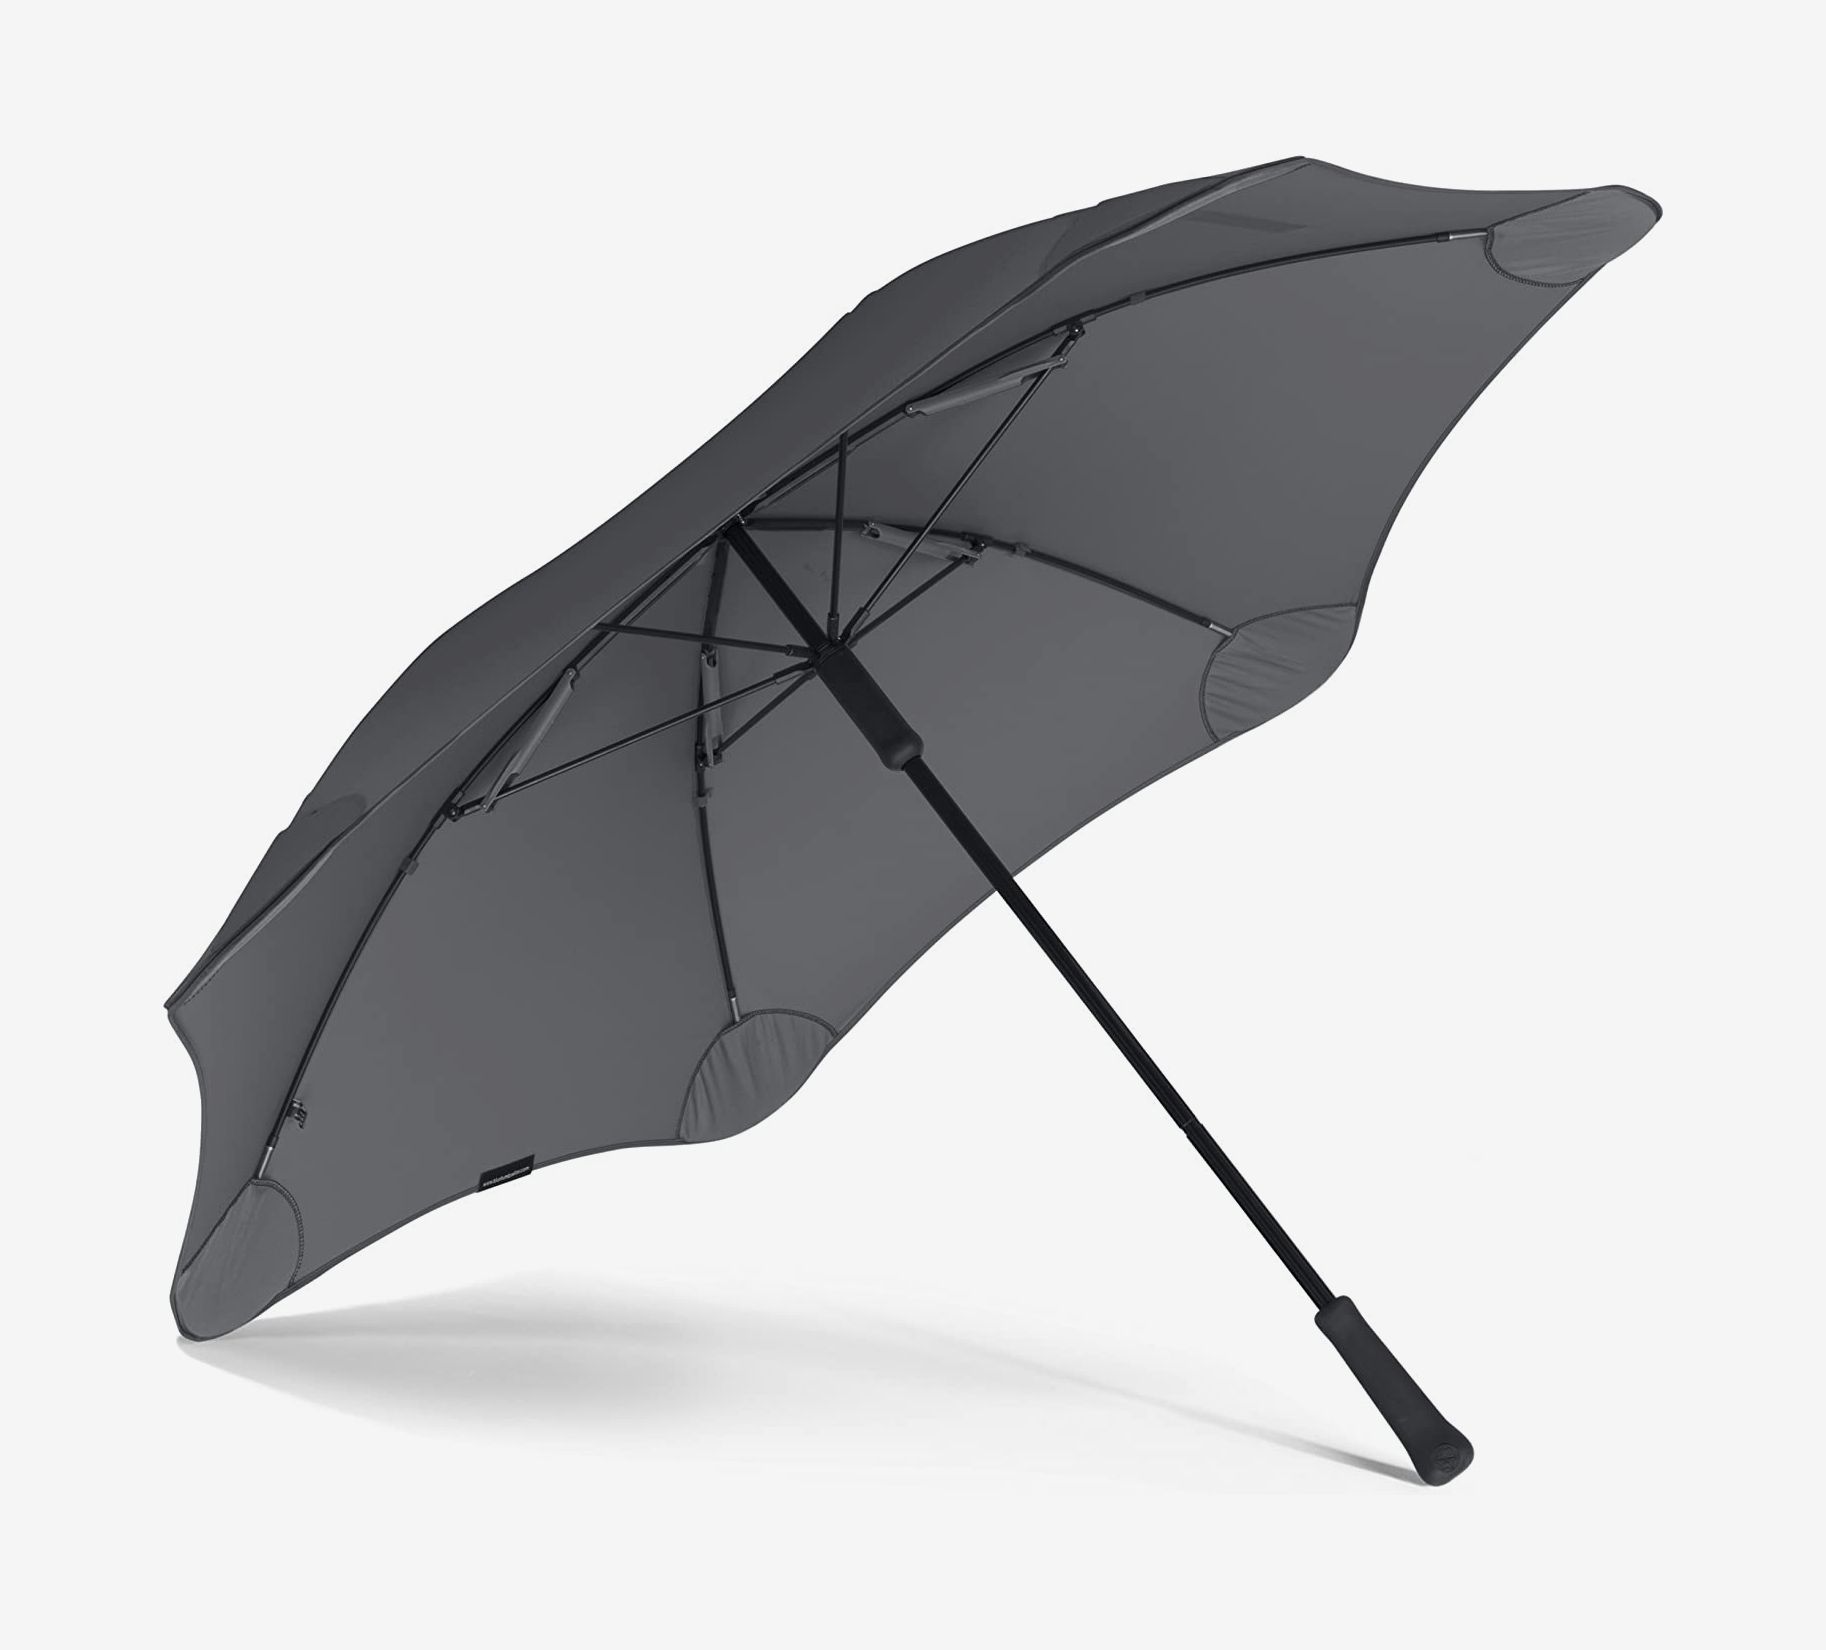 ZhiGe Foldable Umbrella,Automatic Umbrella Three Folding 10 Ribs Wooden Handle Business Men Umbrella Rain Women Parasol Windproof Umbrellas